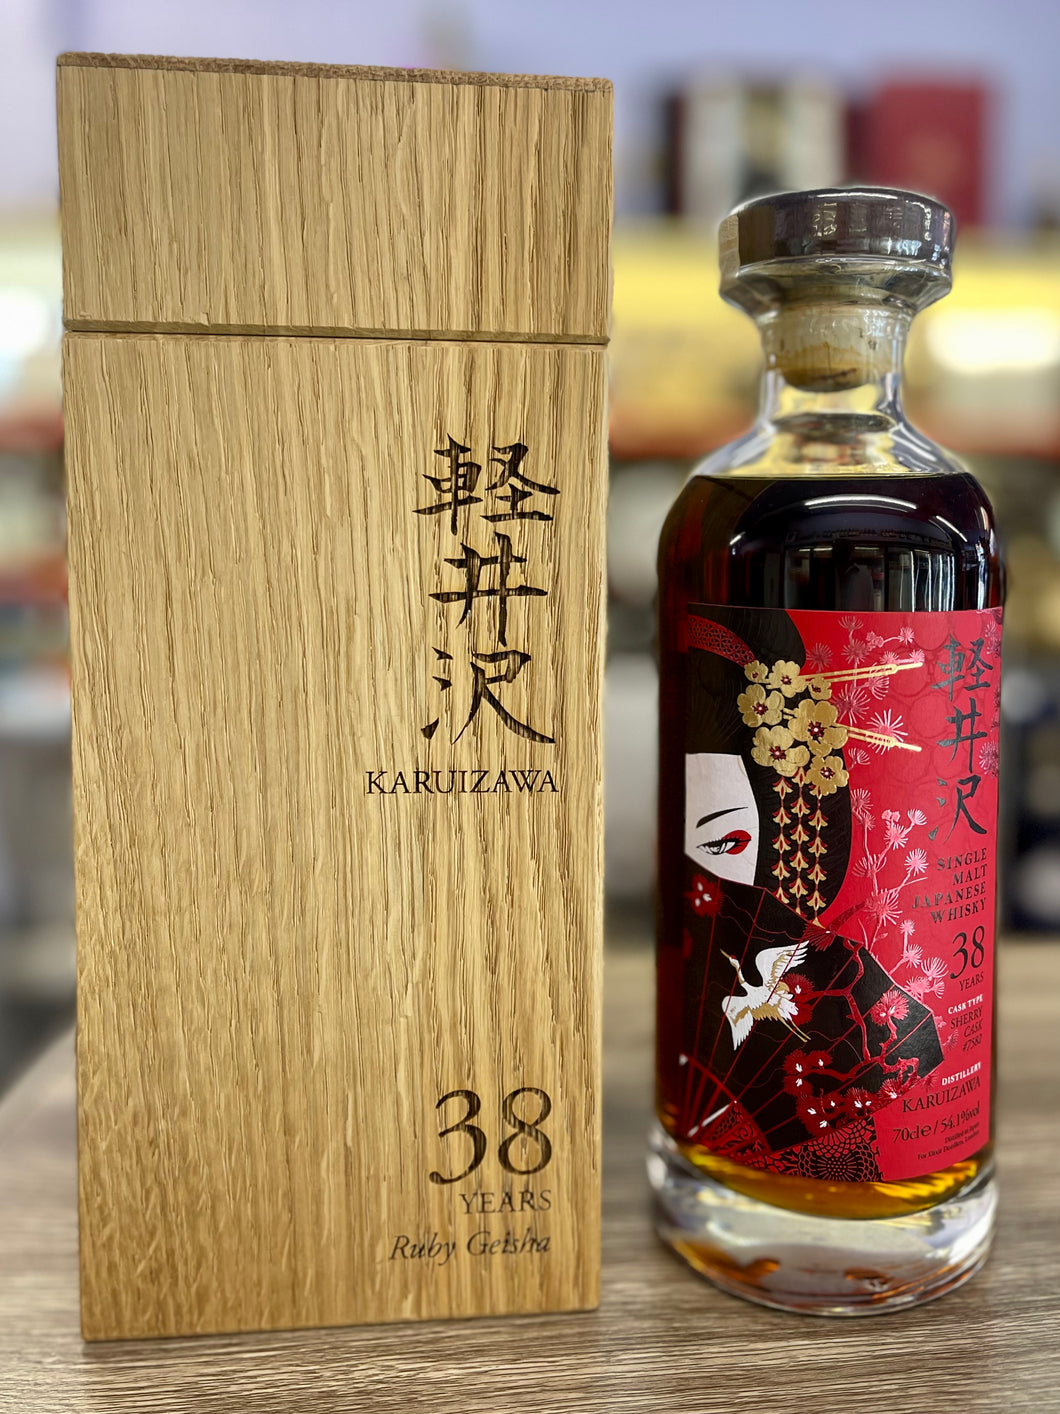 Karuizawa Ruby Geisha 38 Year Old Single Malt Whisky